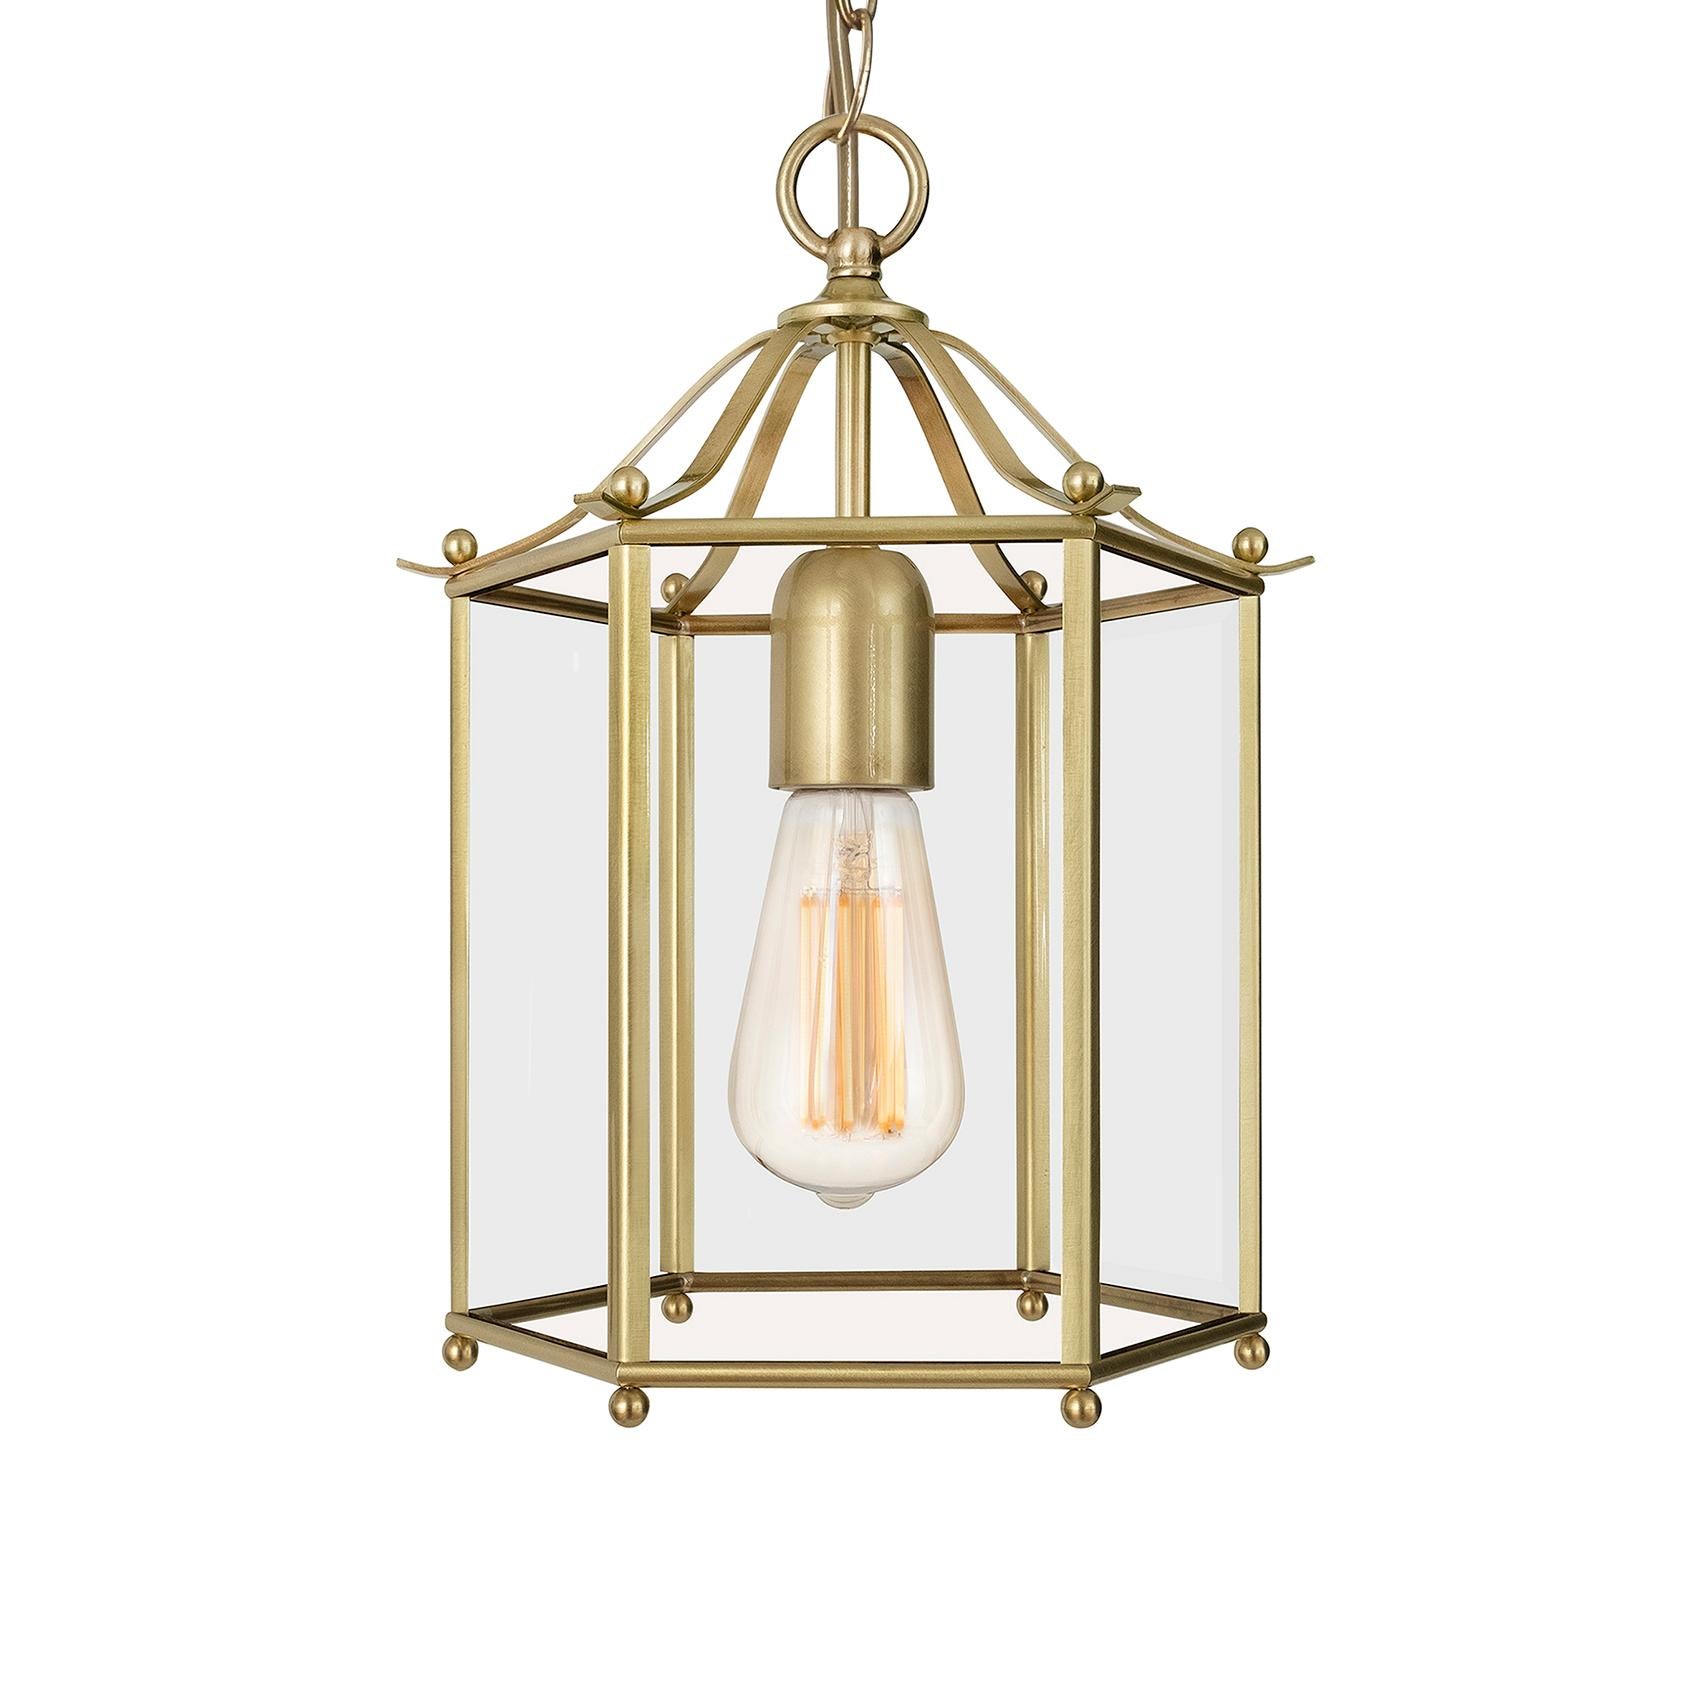 Swedish Konsthantverk Glimminge Brass Ceiling Lamp For Sale